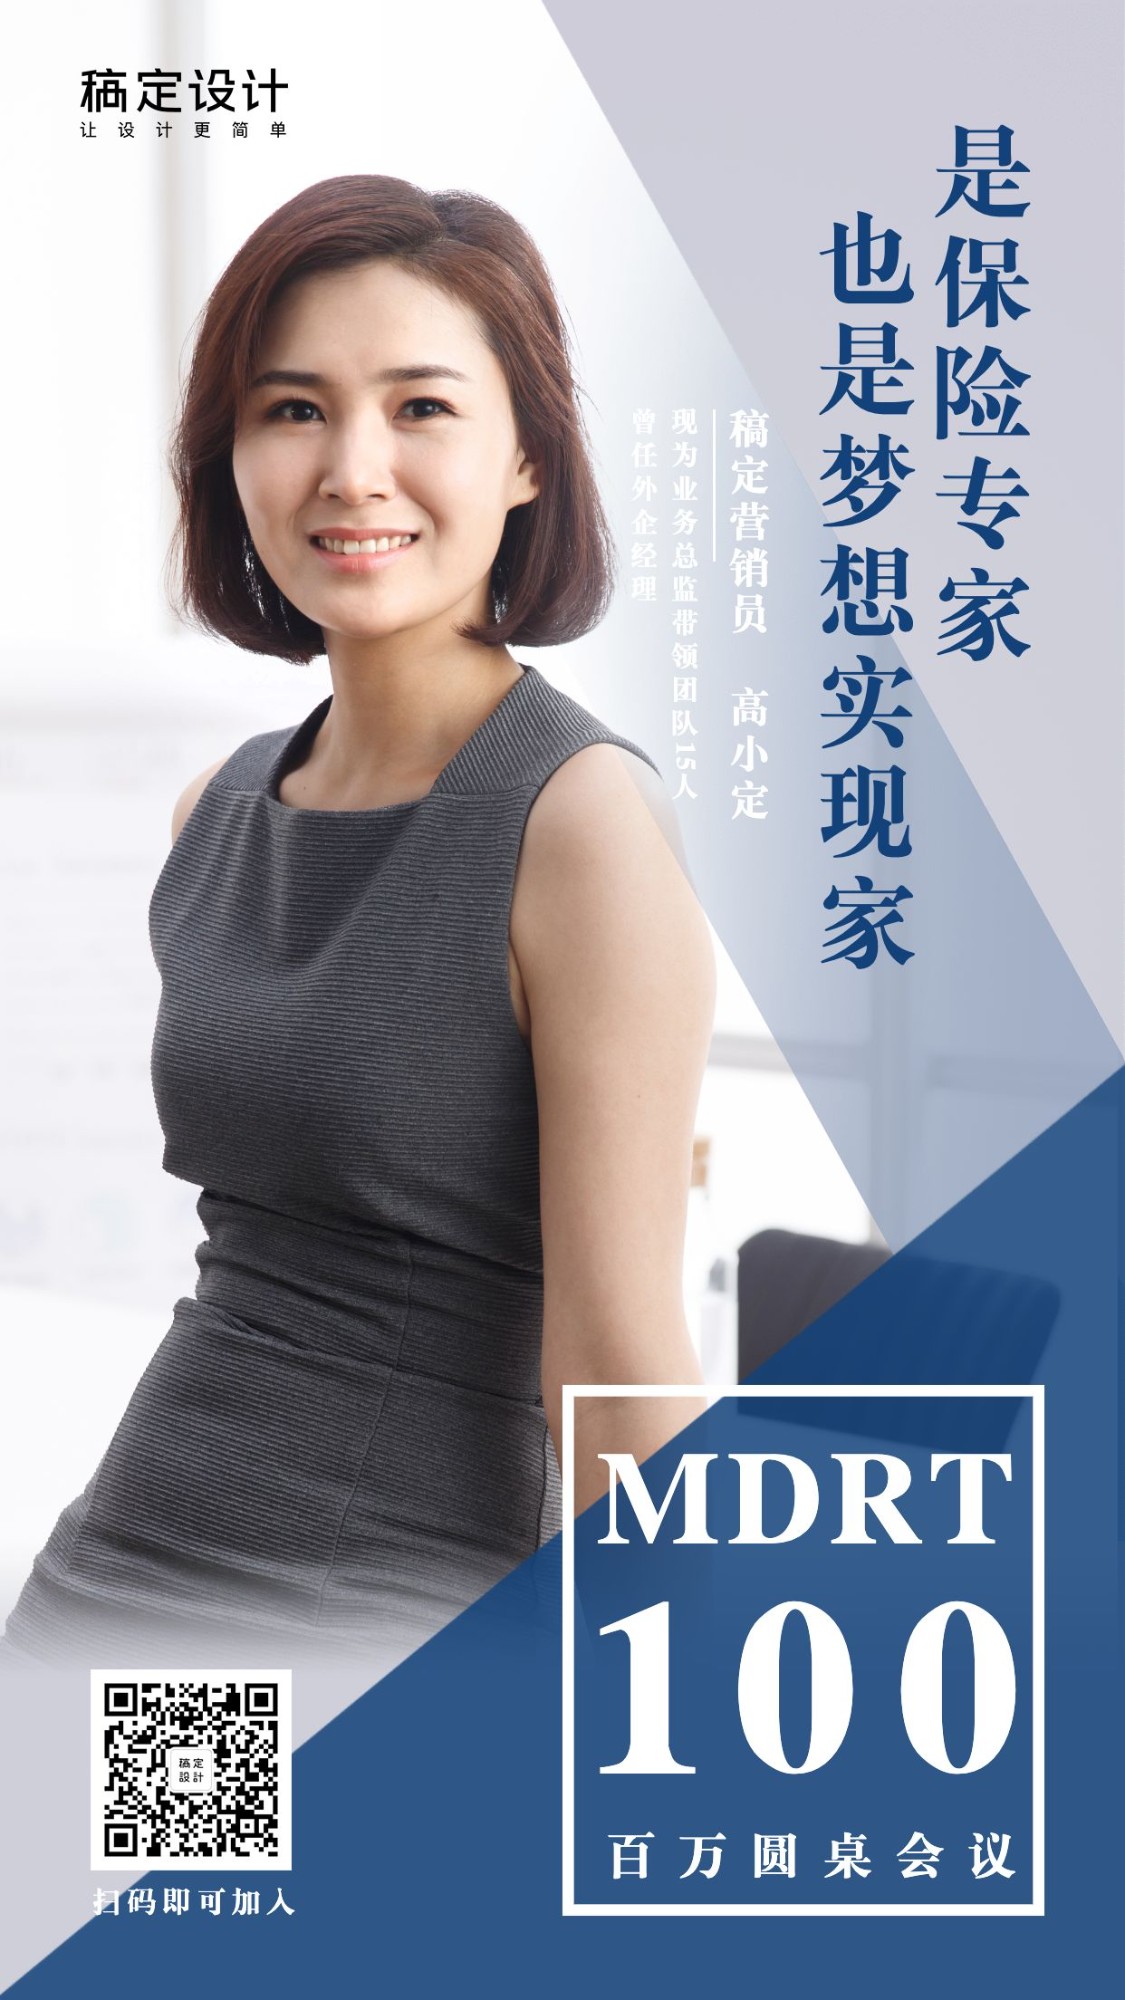 金融保险个人营销MDRT社交名片预览效果